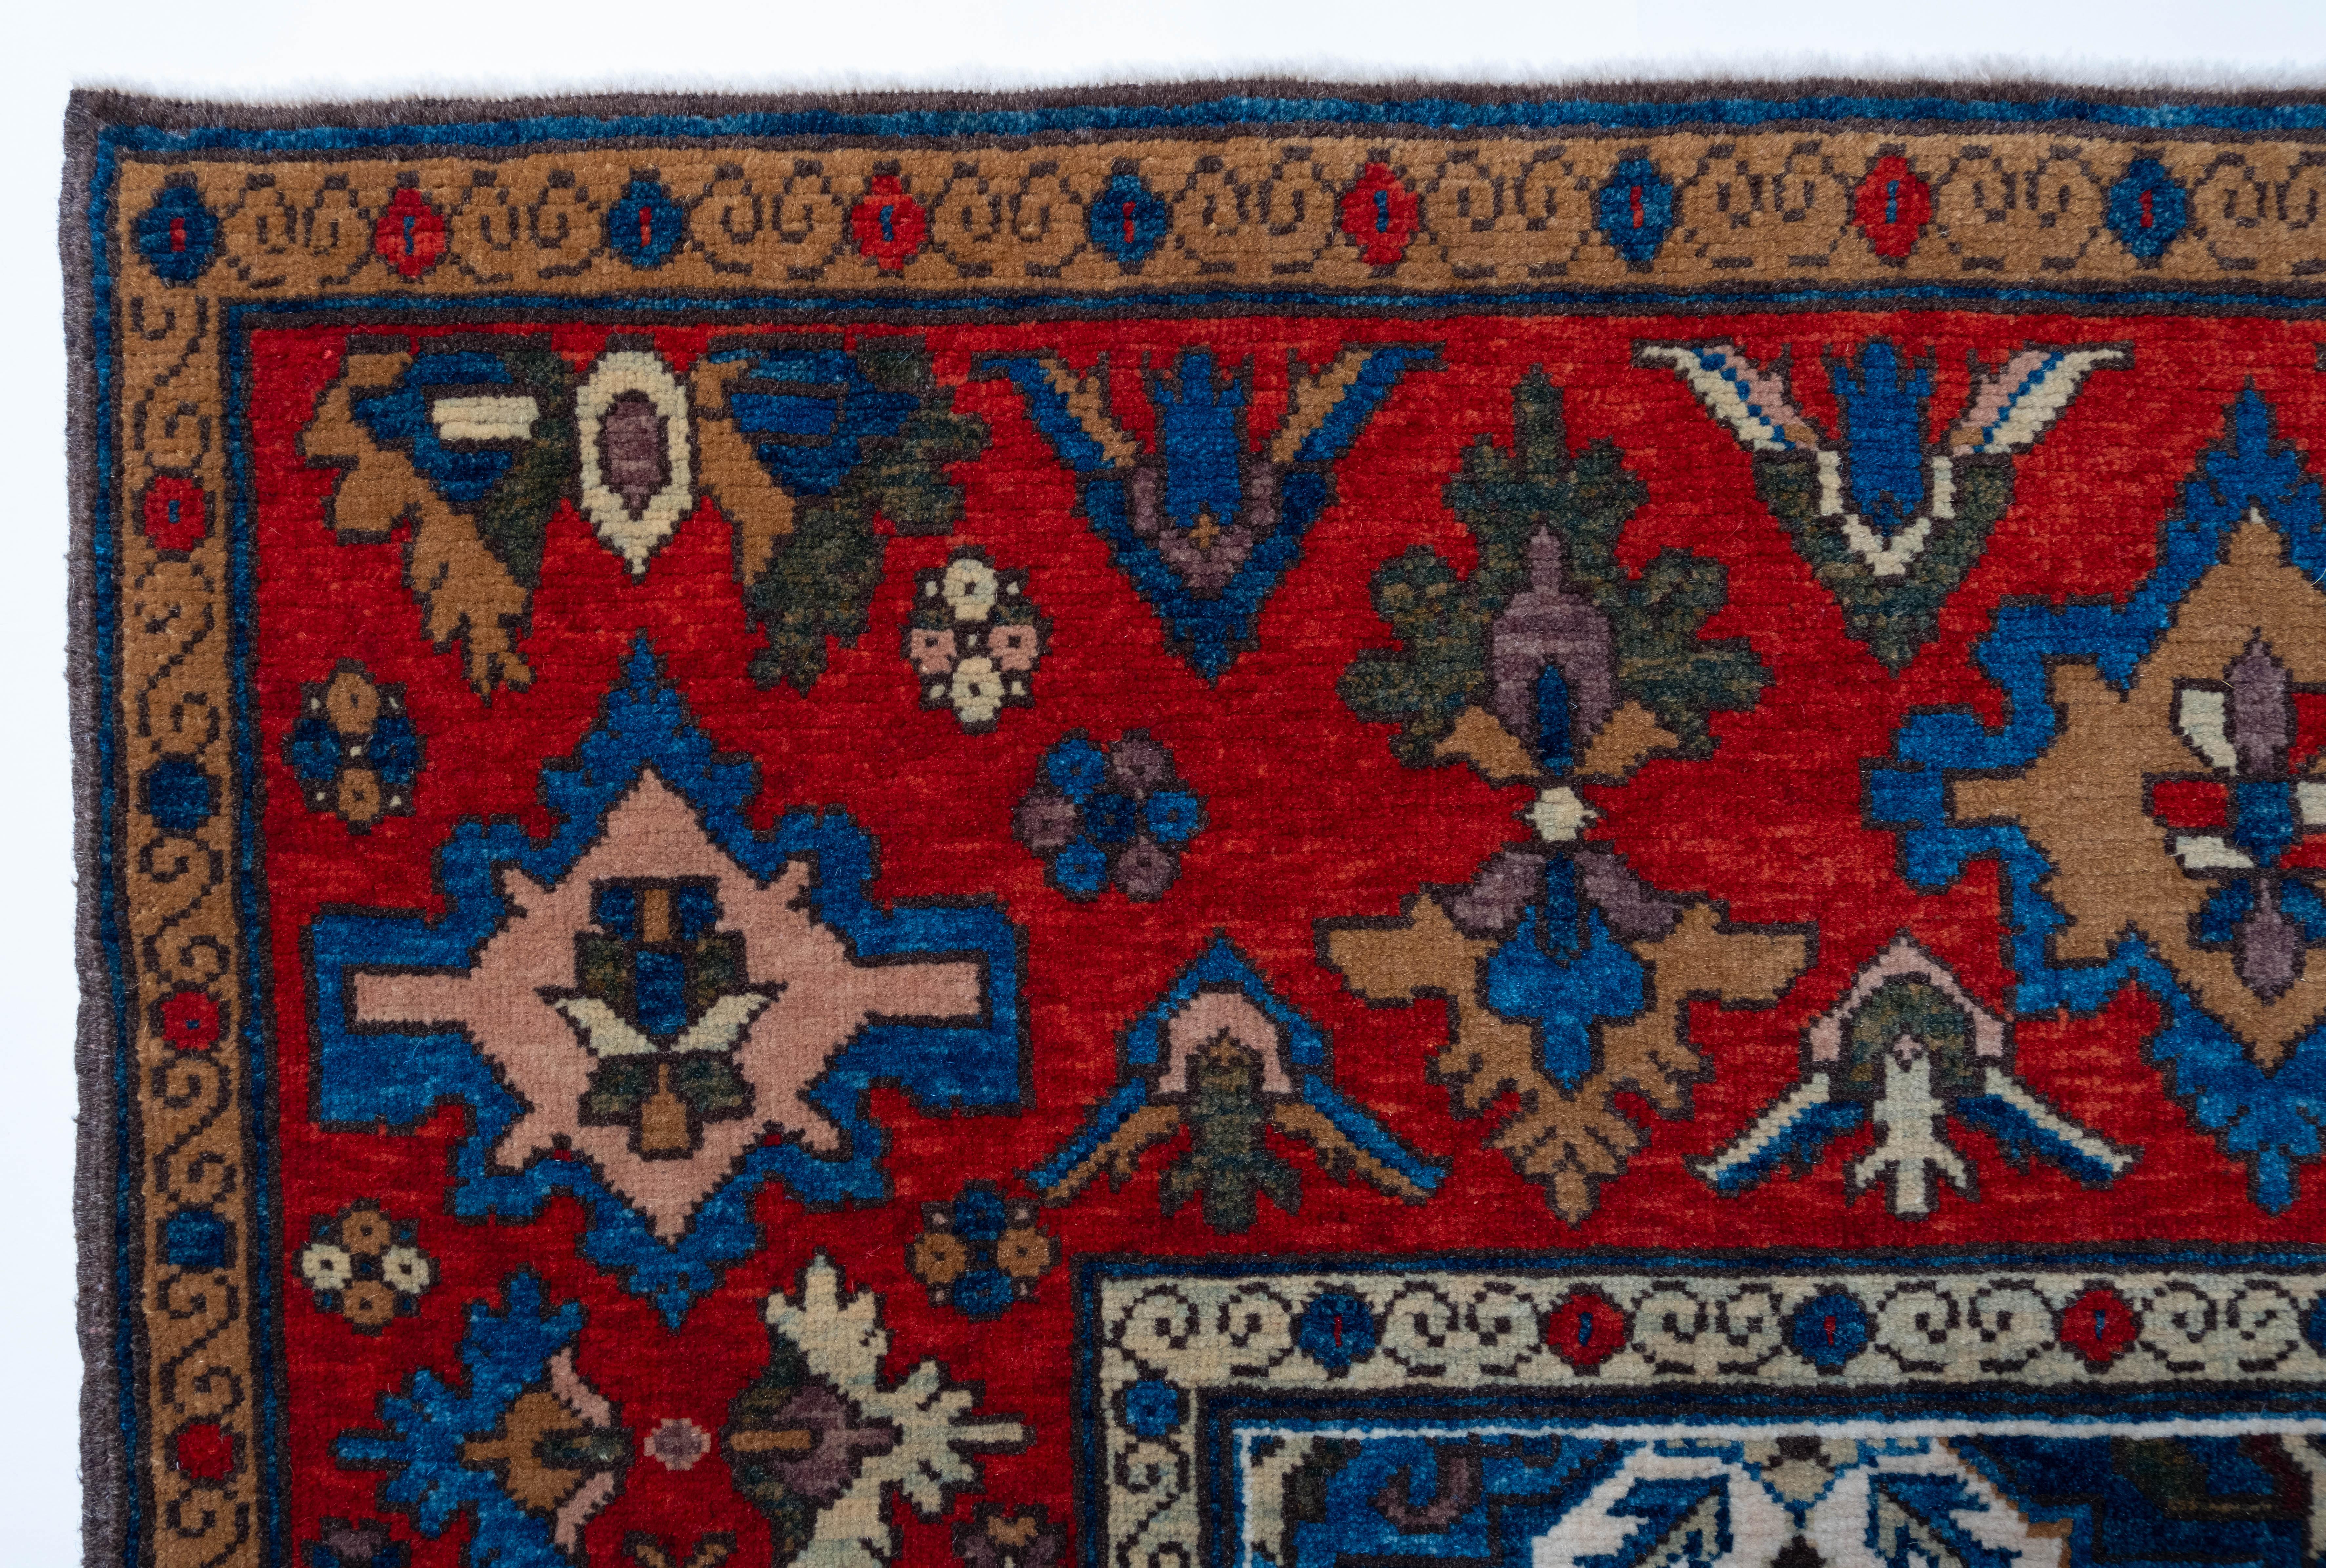 Die Quelle des Teppichs stammt aus dem Buch Orient Star - A Carpet Collection, E. Heinrich Kirchheim, Hali Publications Ltd, 1993 nr.75. Dieses versetzte Muster besteht aus aufsteigenden, schildartigen Palmetten, die von blattähnlichen Flügeln